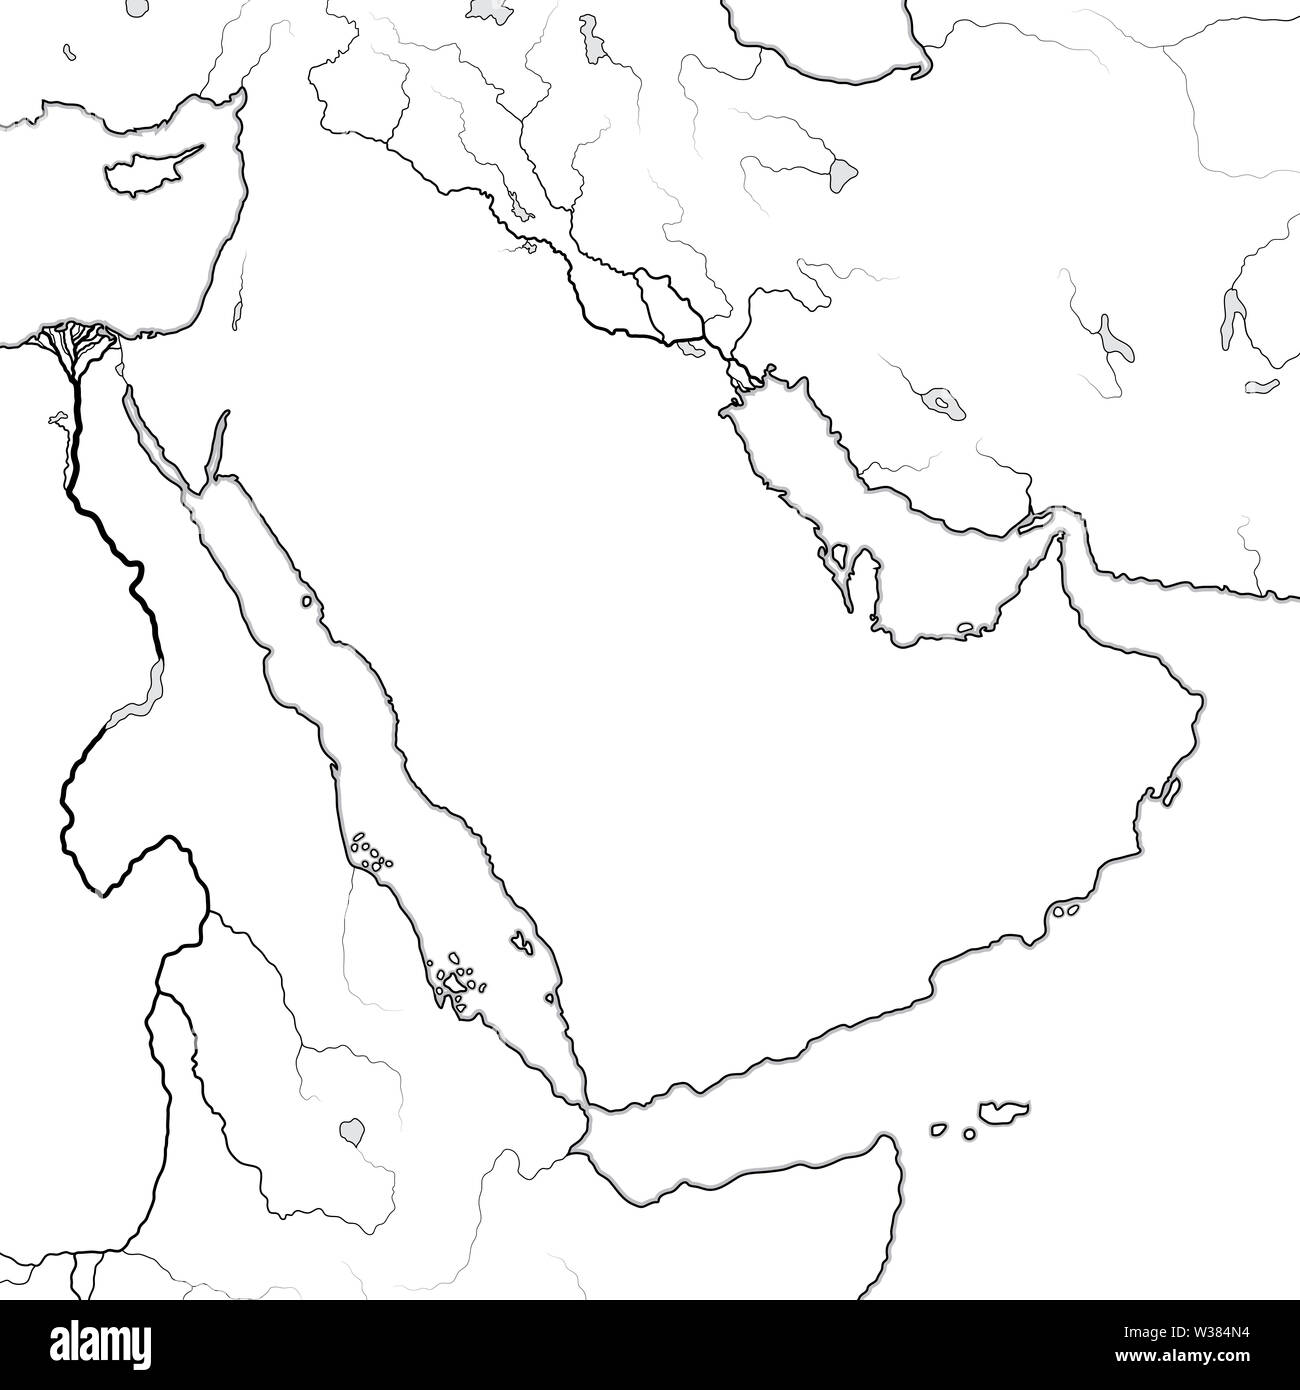 Mappa mondiale della penisola arabica: il Medio Oriente e il mondo arabo, Emirati Arabi, l'Arabia Saudita, Iraq, Siria, Mesopotamia, Persia, Golfo Persico, Mar Rosso. Foto Stock